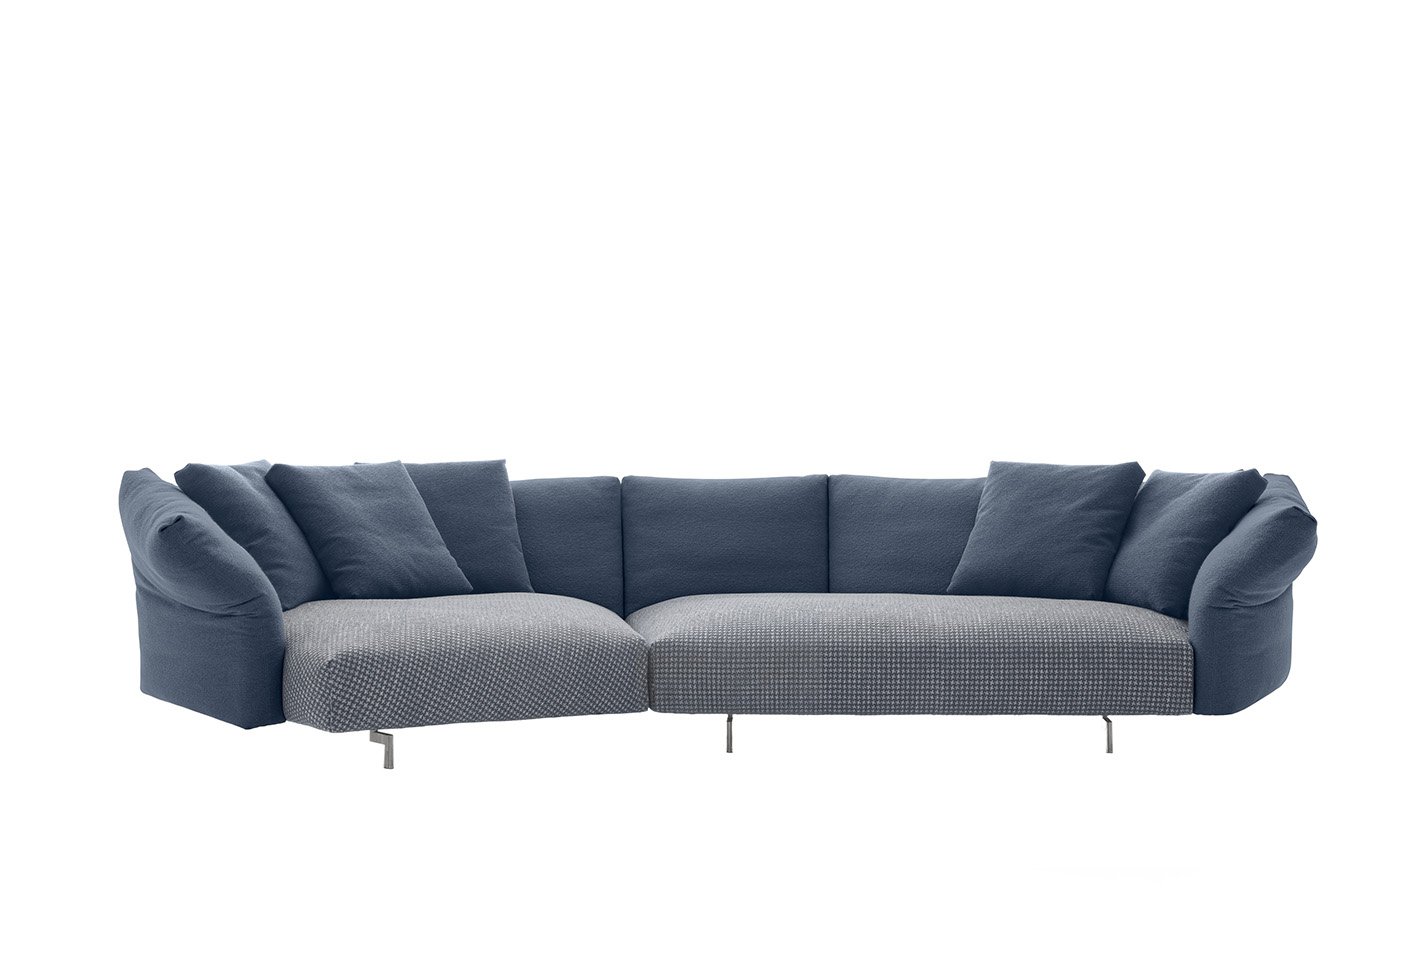 The Dambo sofa by Piero Lissoni for B&B Italia. Photo c/o B&B Italia.